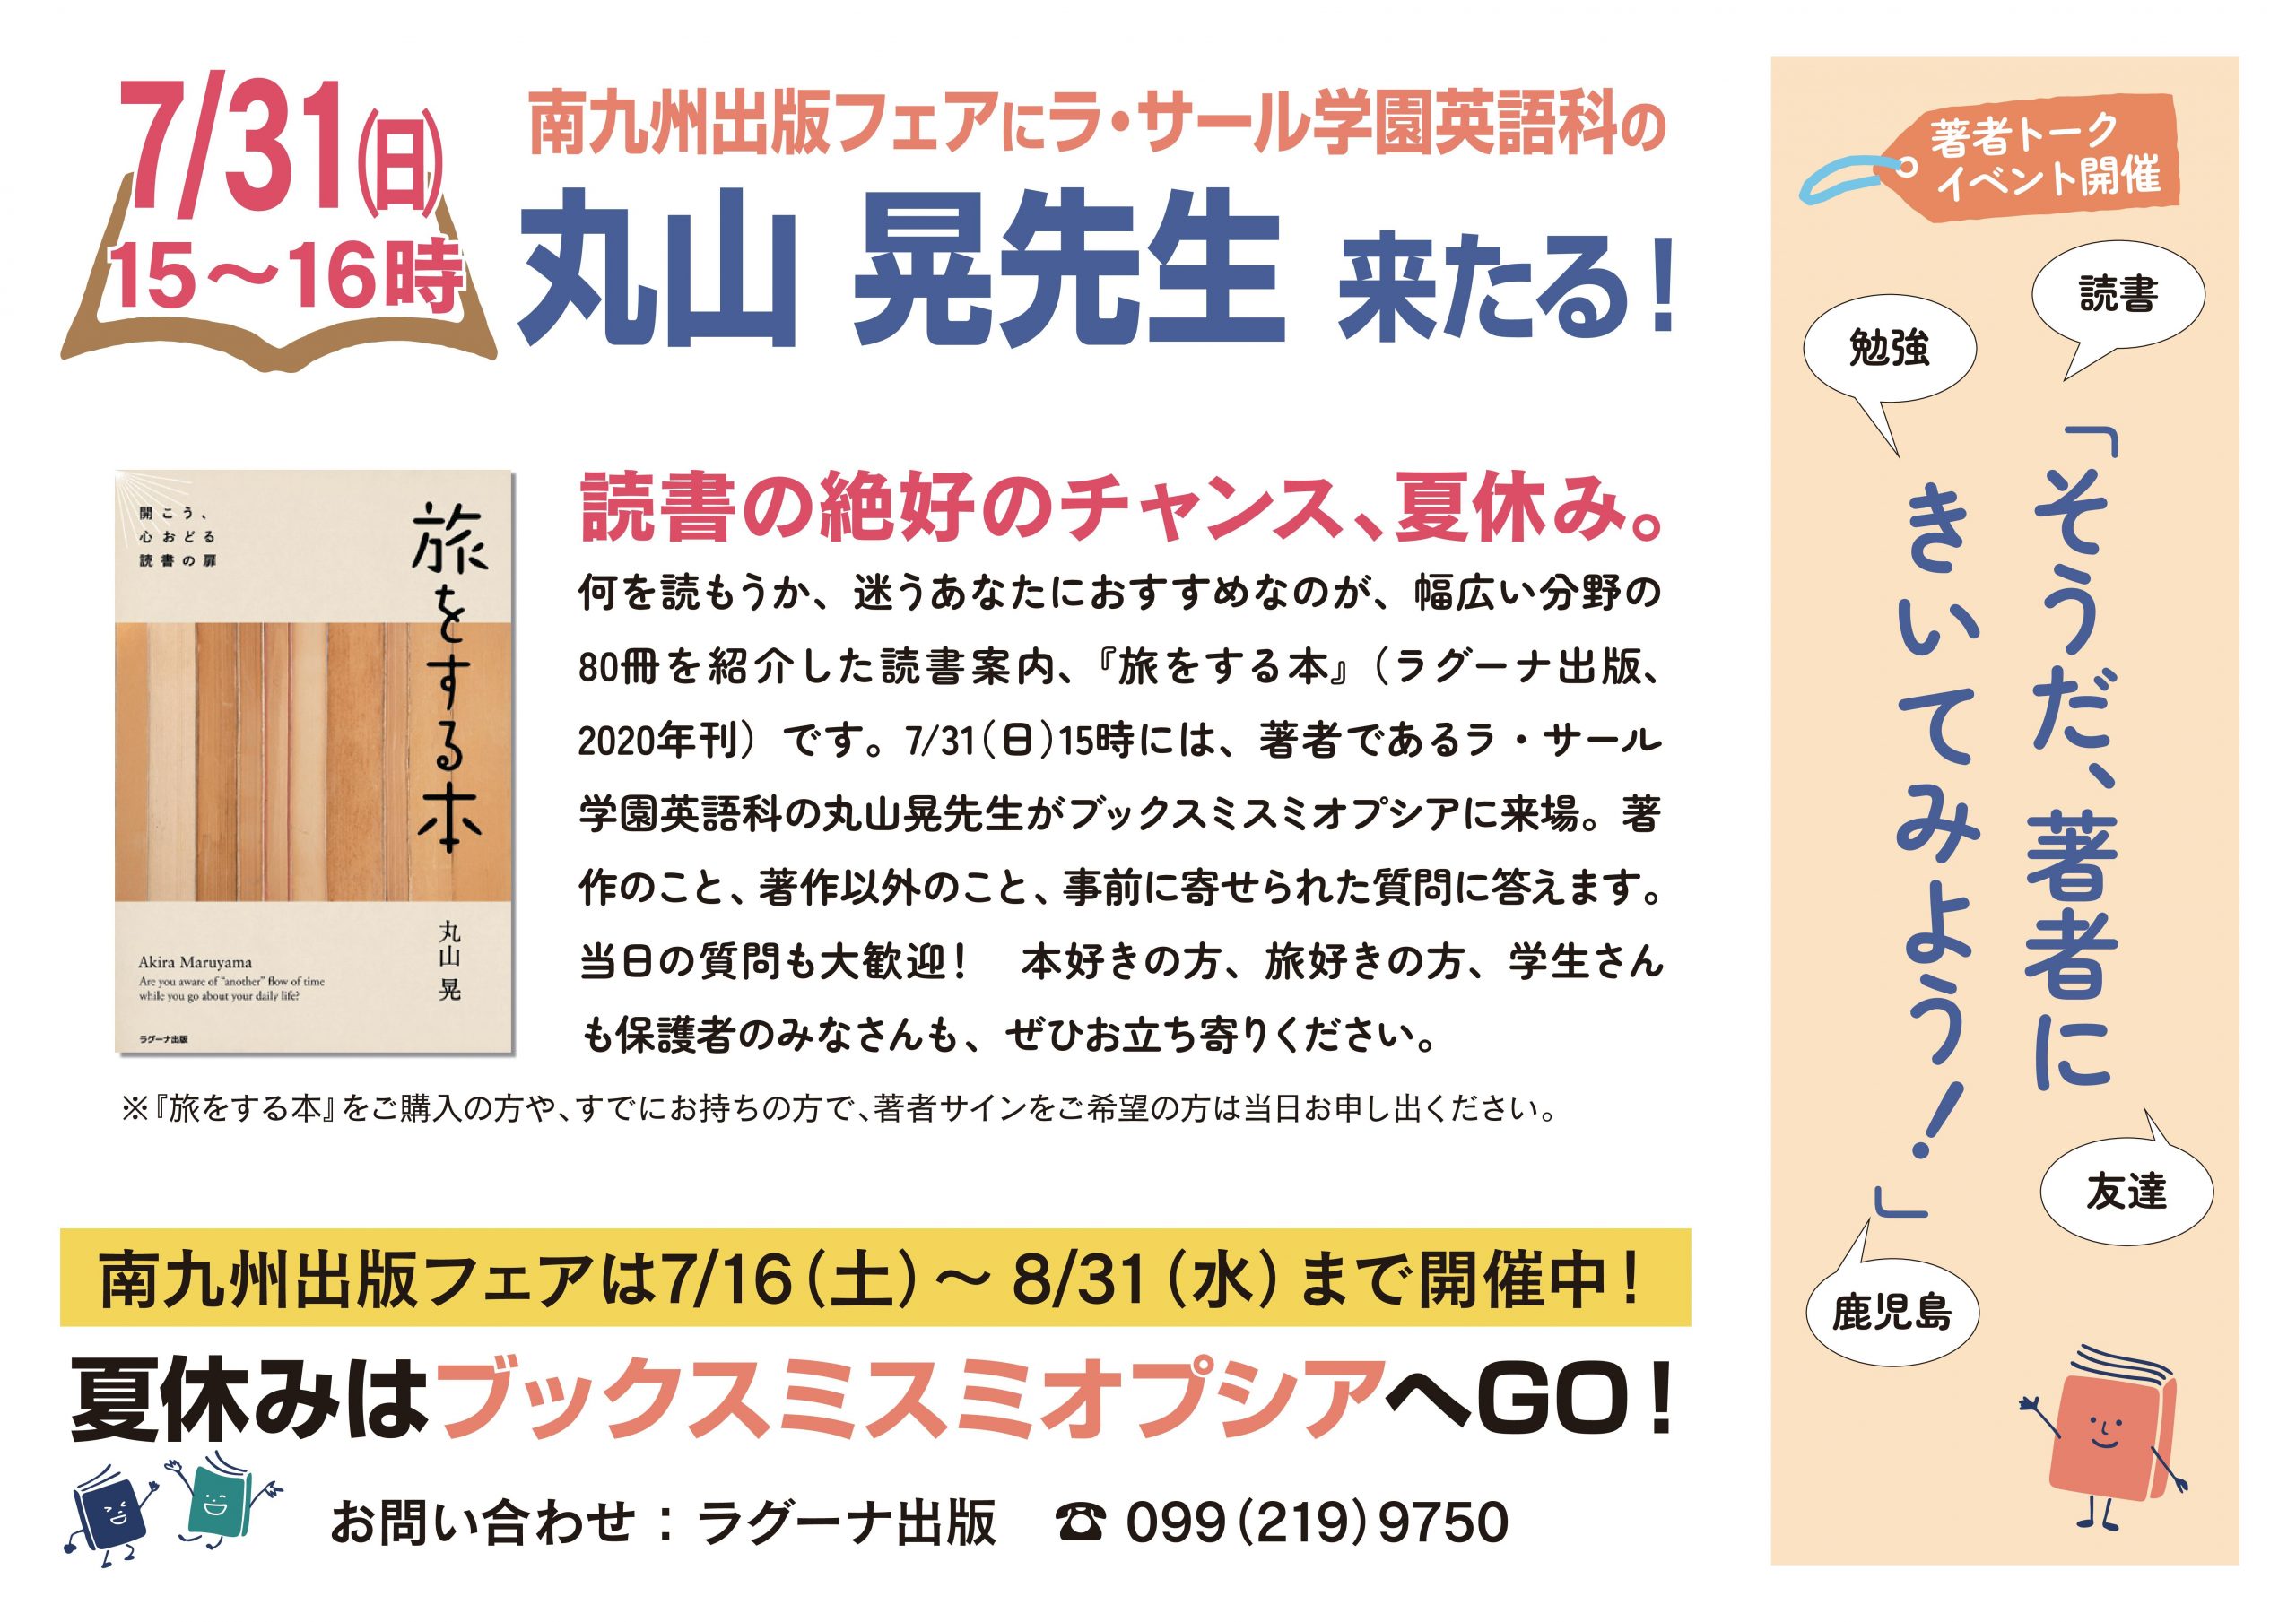 イベントのお知らせ 7 31 旅をする本 著者 丸山晃先生トークイベント そうだ 著者にきいてみよう 開催決定 ラグーナ出版